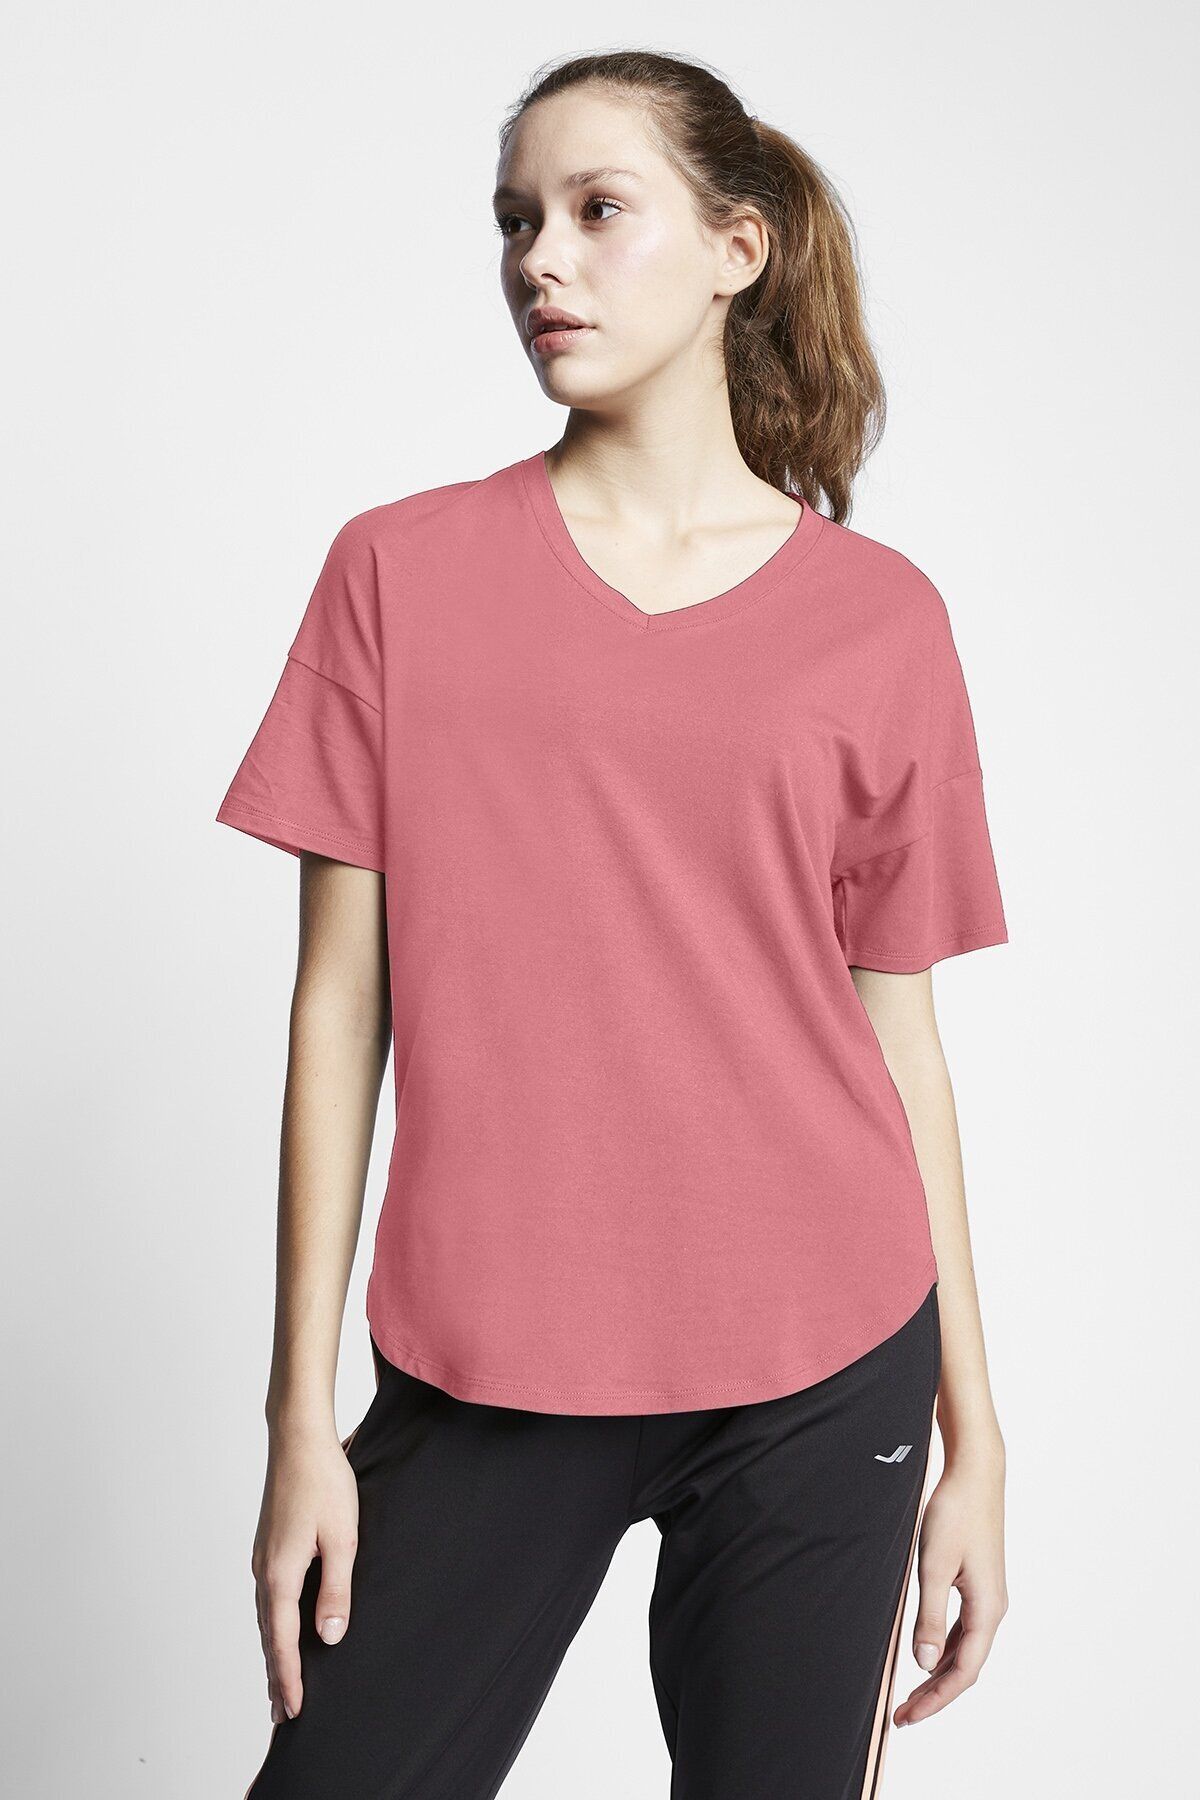 Lescon Kadın Kısa Kollu T-shirt 23s-2215-23b